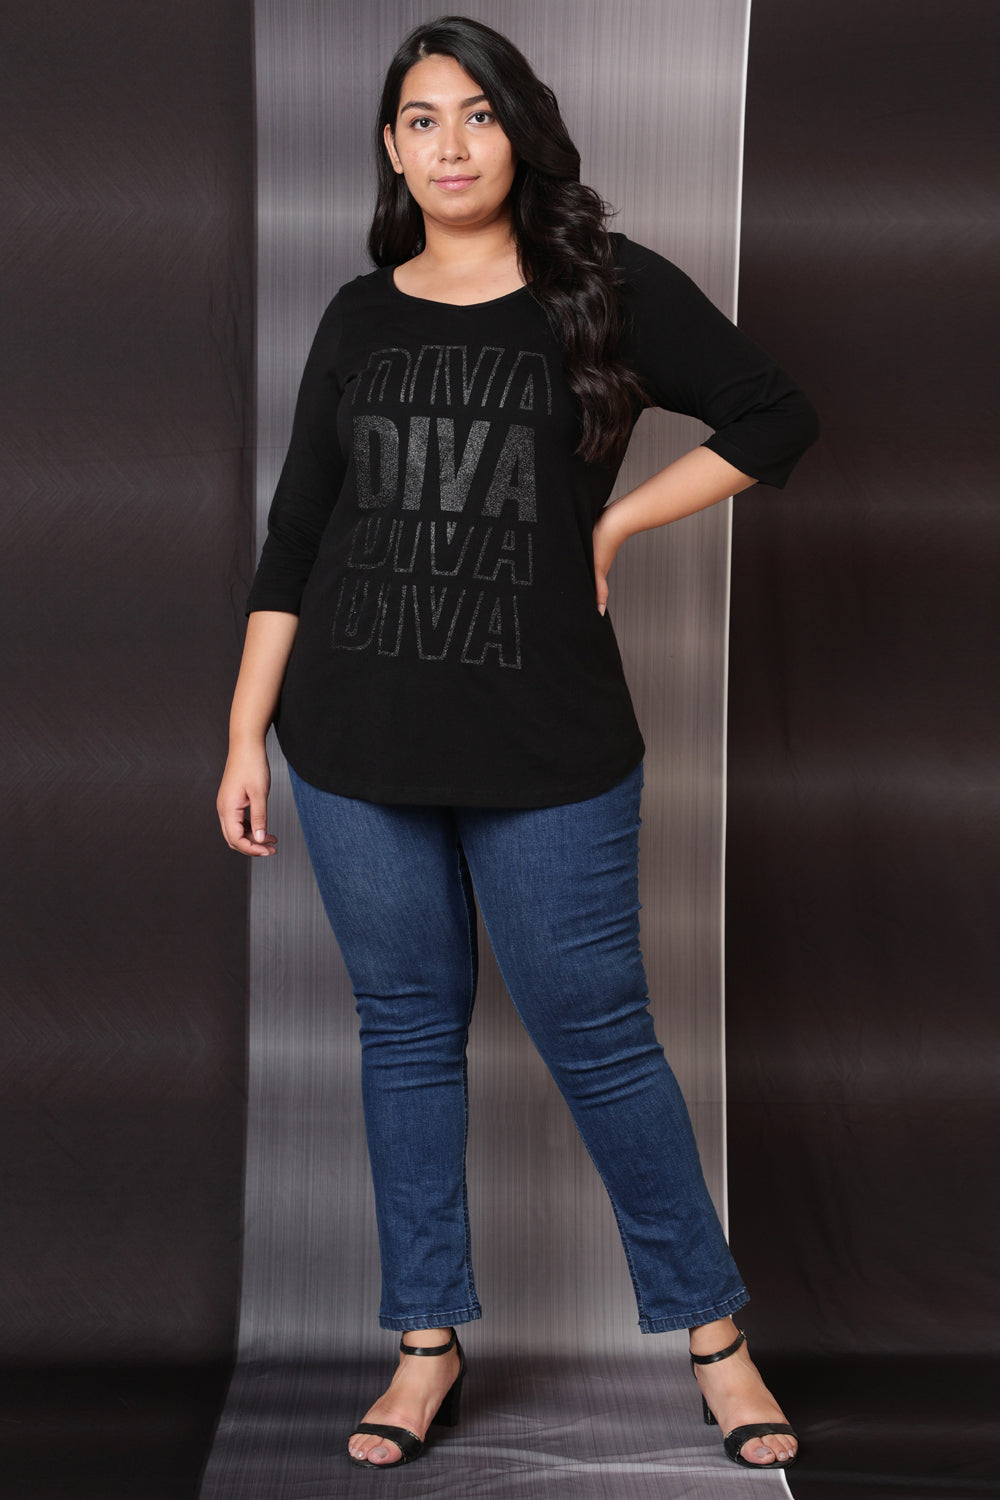 Diva Black Party Tshirt